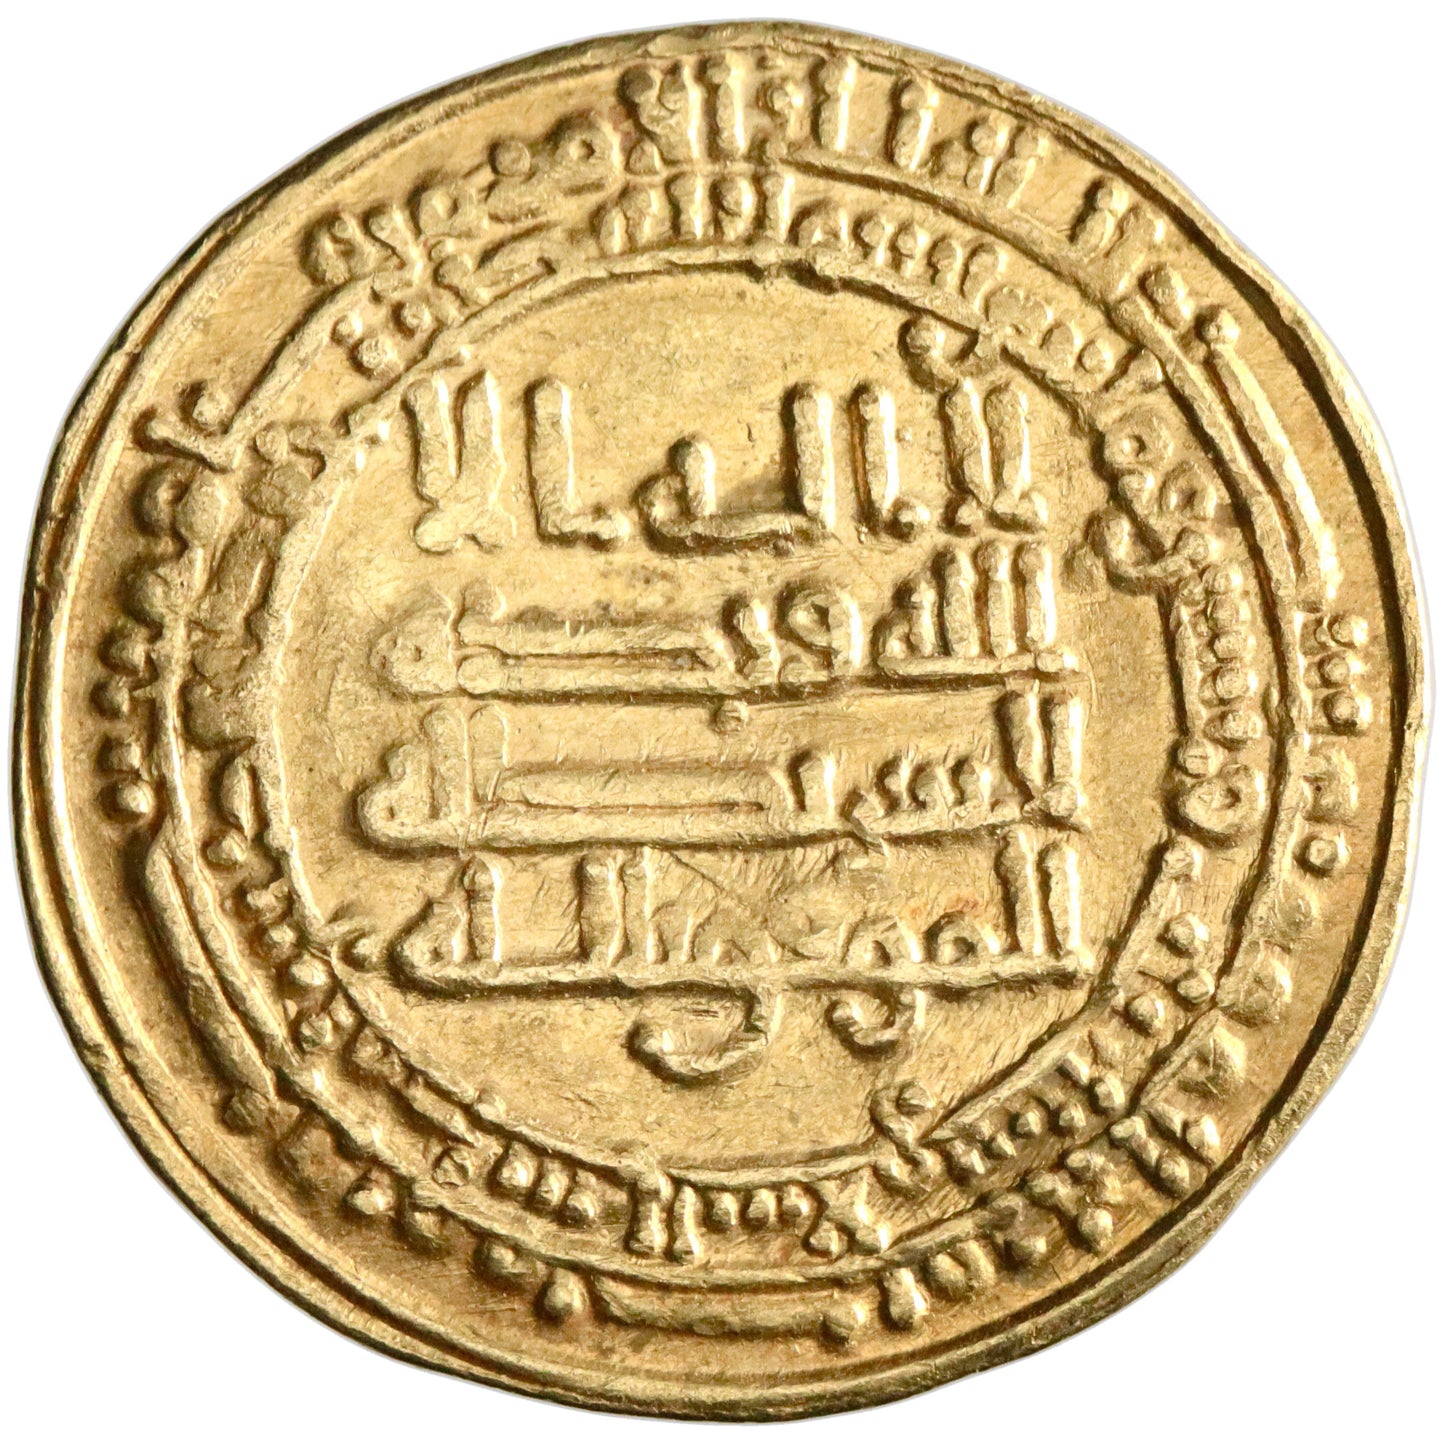 Abbasid, al-Mu'tamid, gold dinar, Madinat al-Salam (Baghdad) mint, AH 263, citing al-Muwaffaq